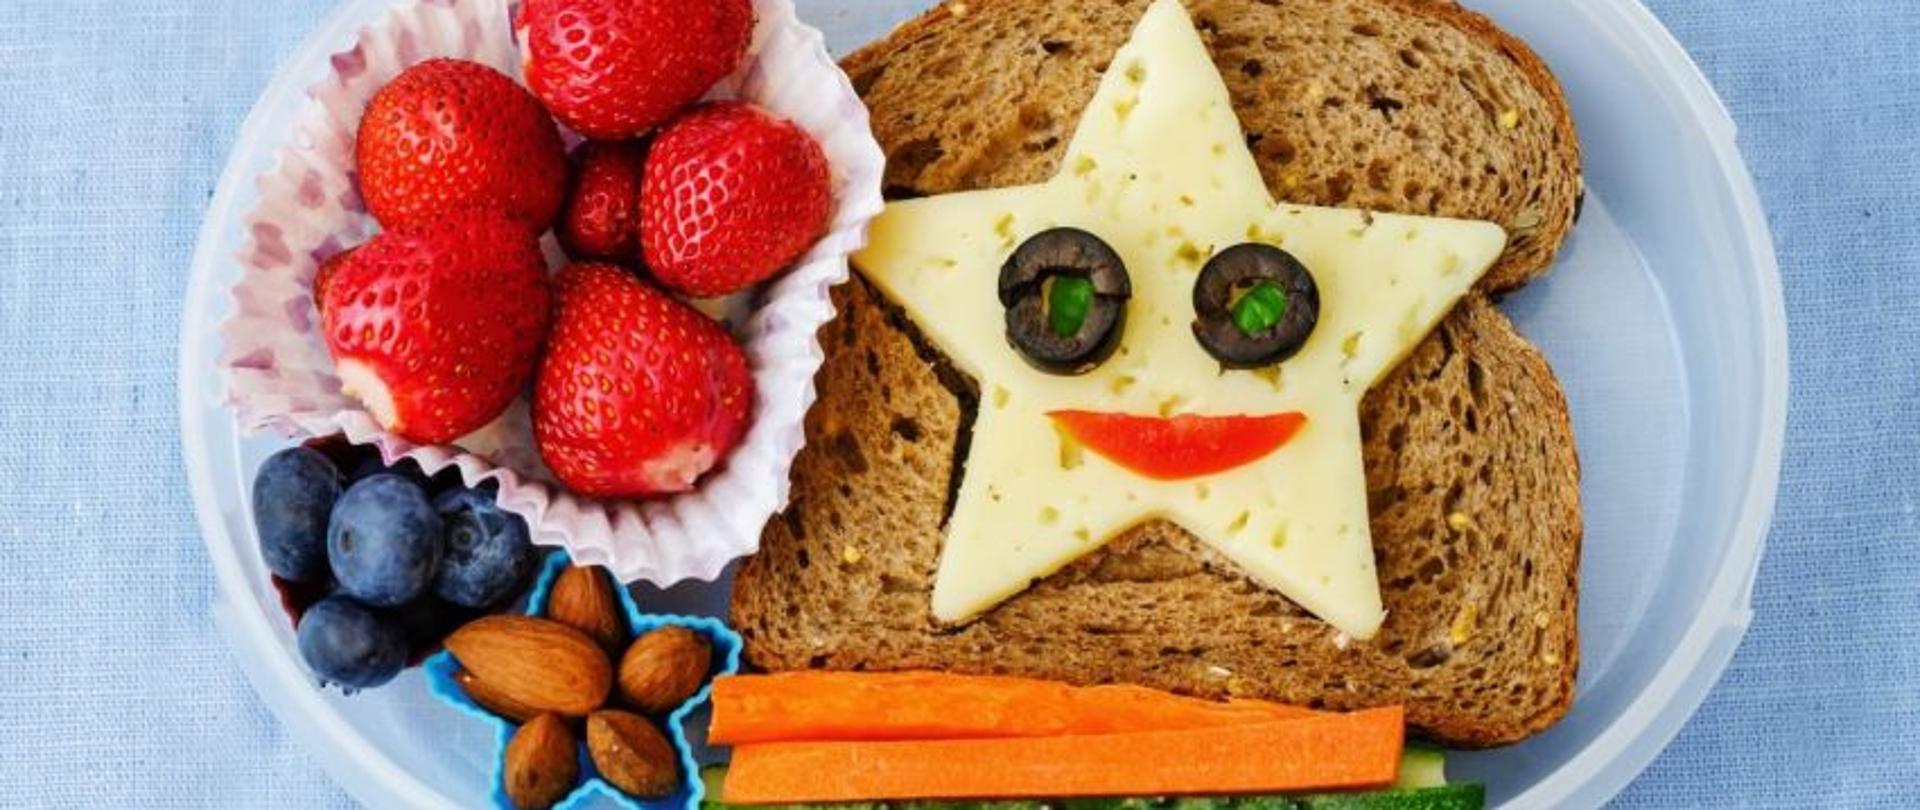 na zdjęciu pojemnik z jedzeniem. kanapka z serem wyciętym w gwiazdę, w środku sera oczy z oliwek, obok truskawki, borówki, migdały, marchewka i ogórek